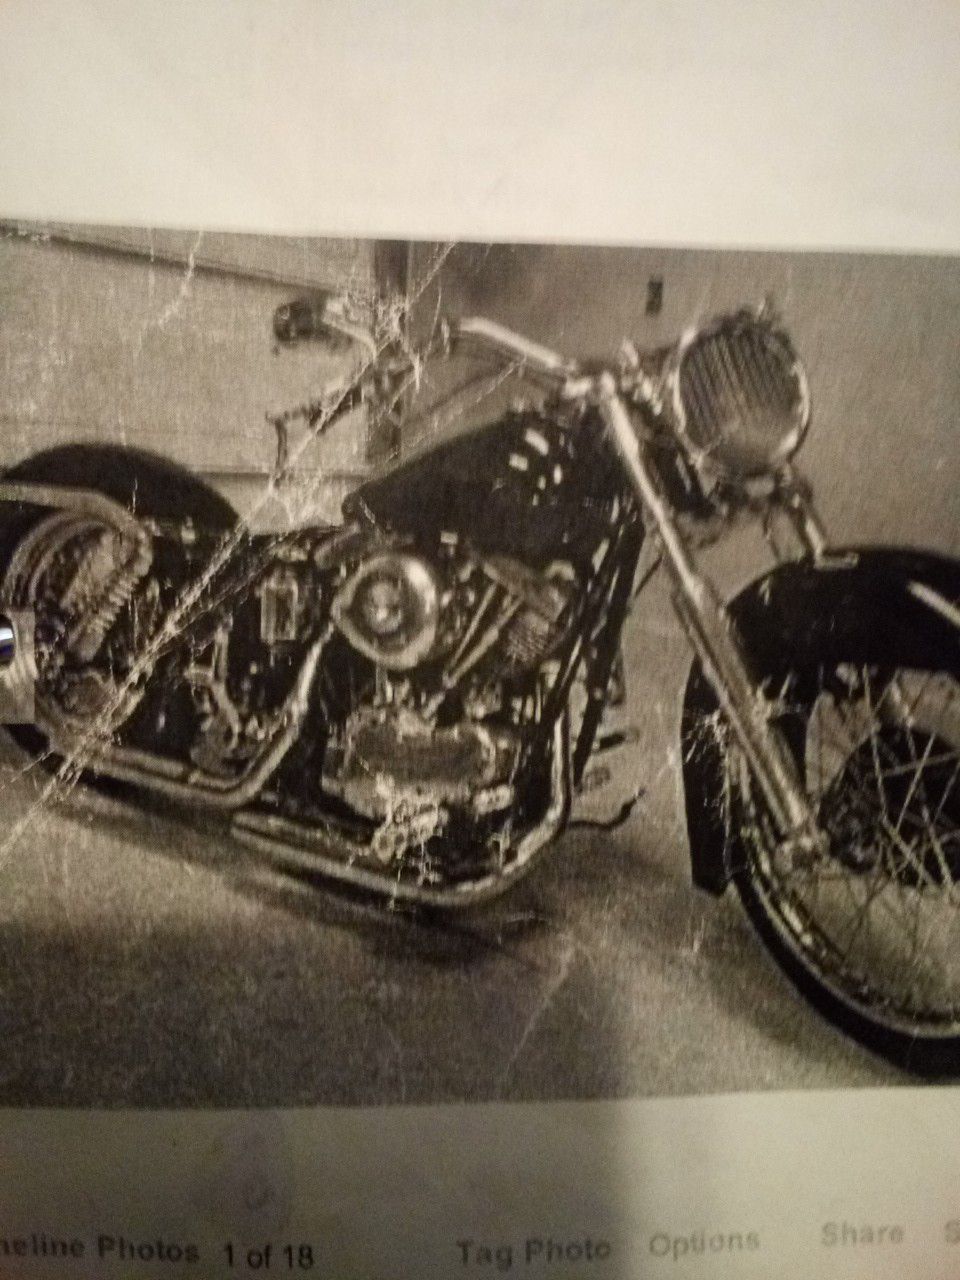 1967 Harley Davidson PAN SHOVEL engine